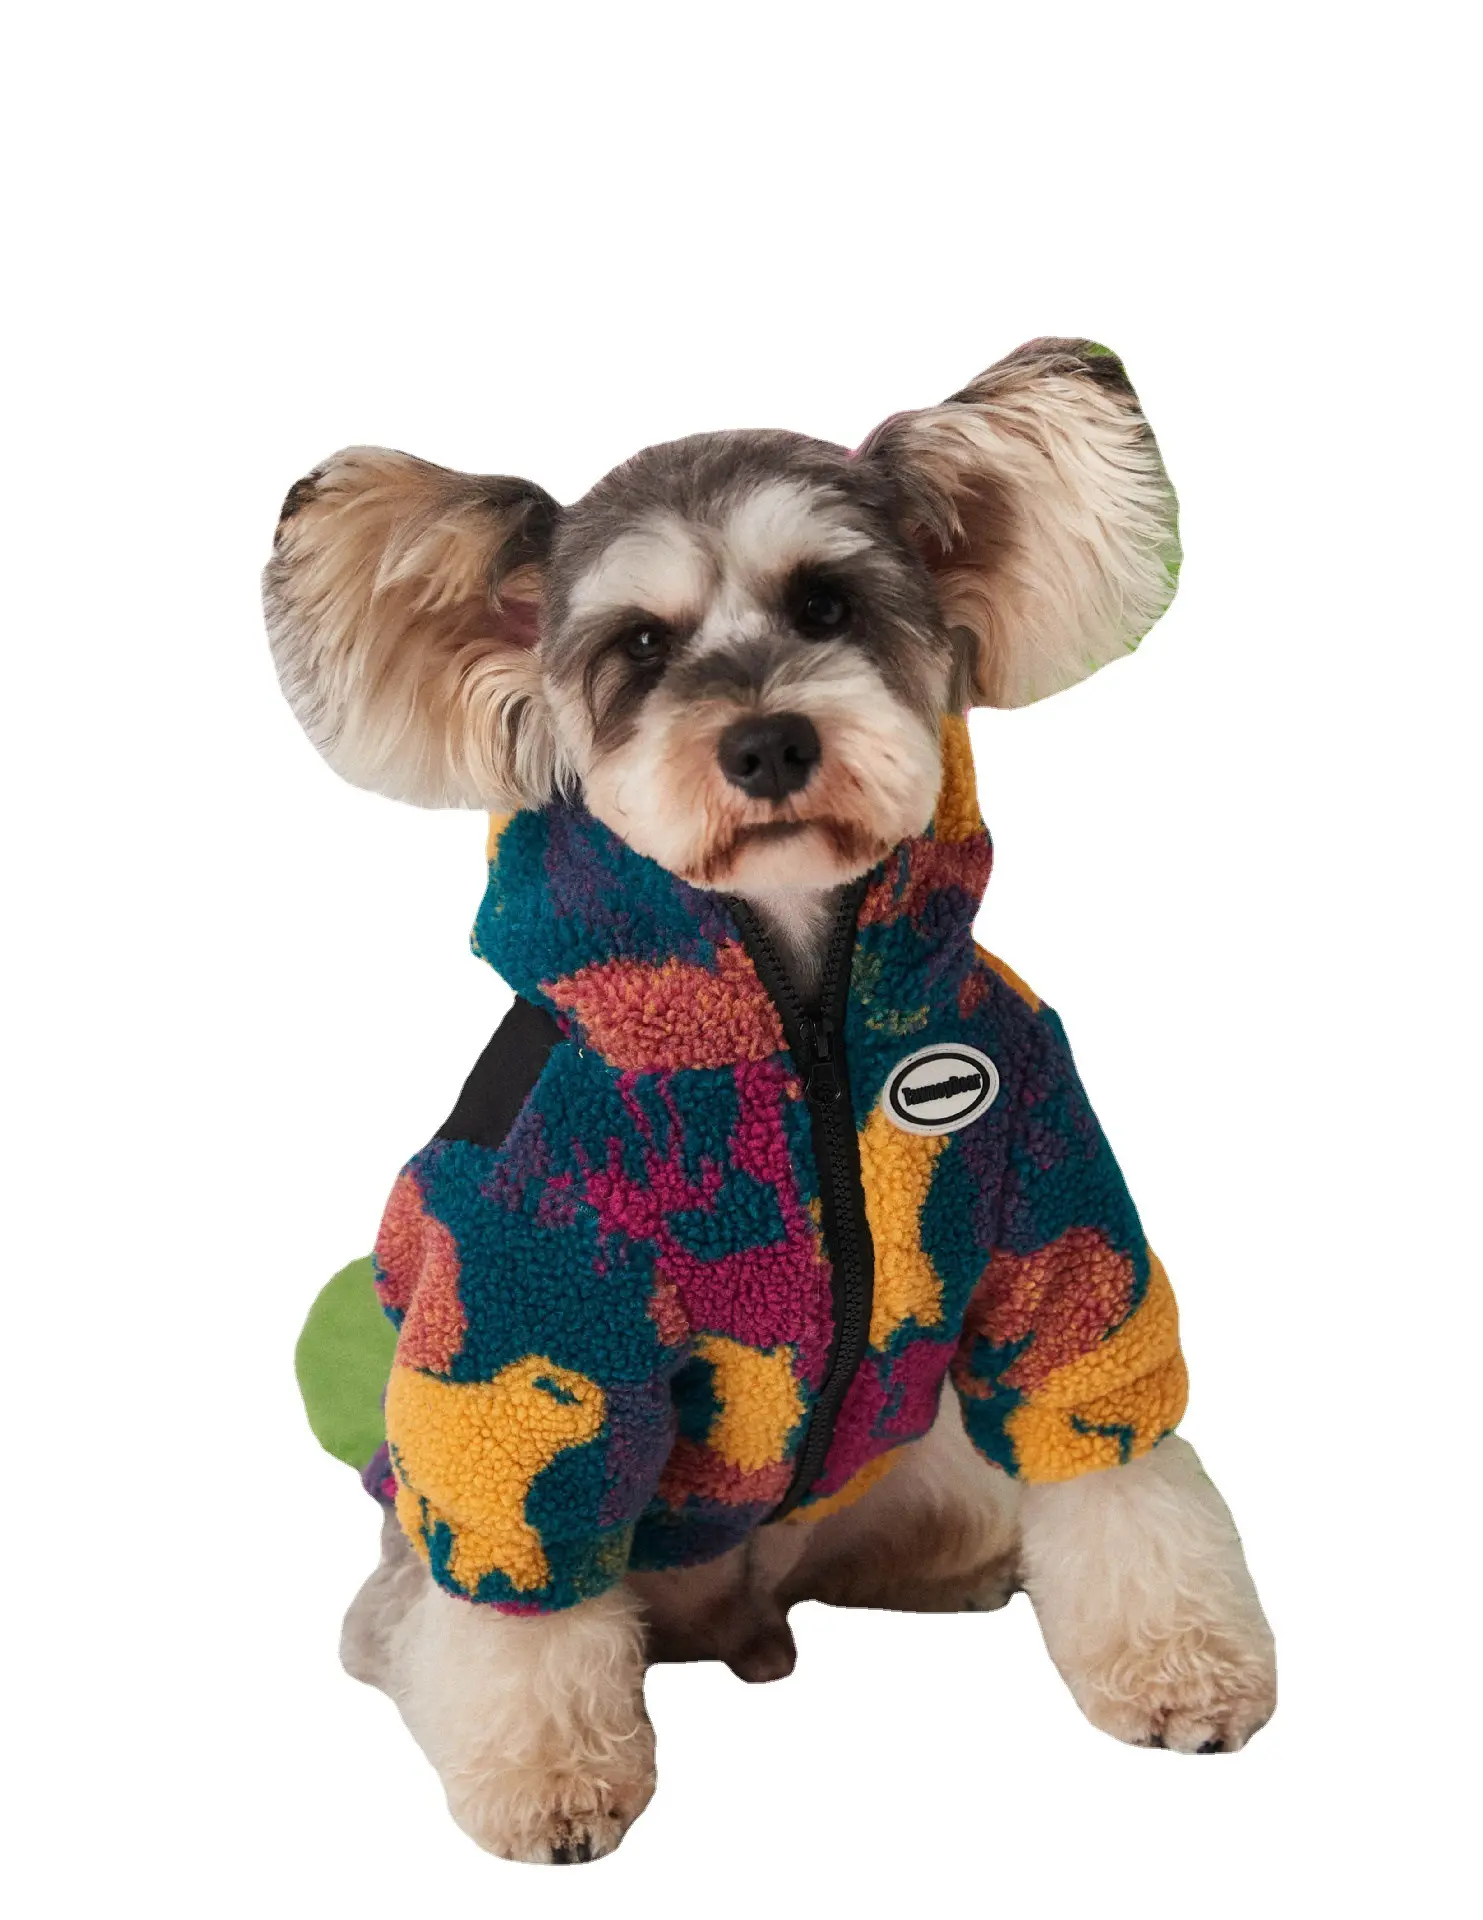 फैशन डिजाइन ब्रांड Hoodies बर्फ कोट सर्दियों के कपड़े के साथ गर्म बिल्ली कुत्ते फर कोट ऊन प्यारा कान टोपी